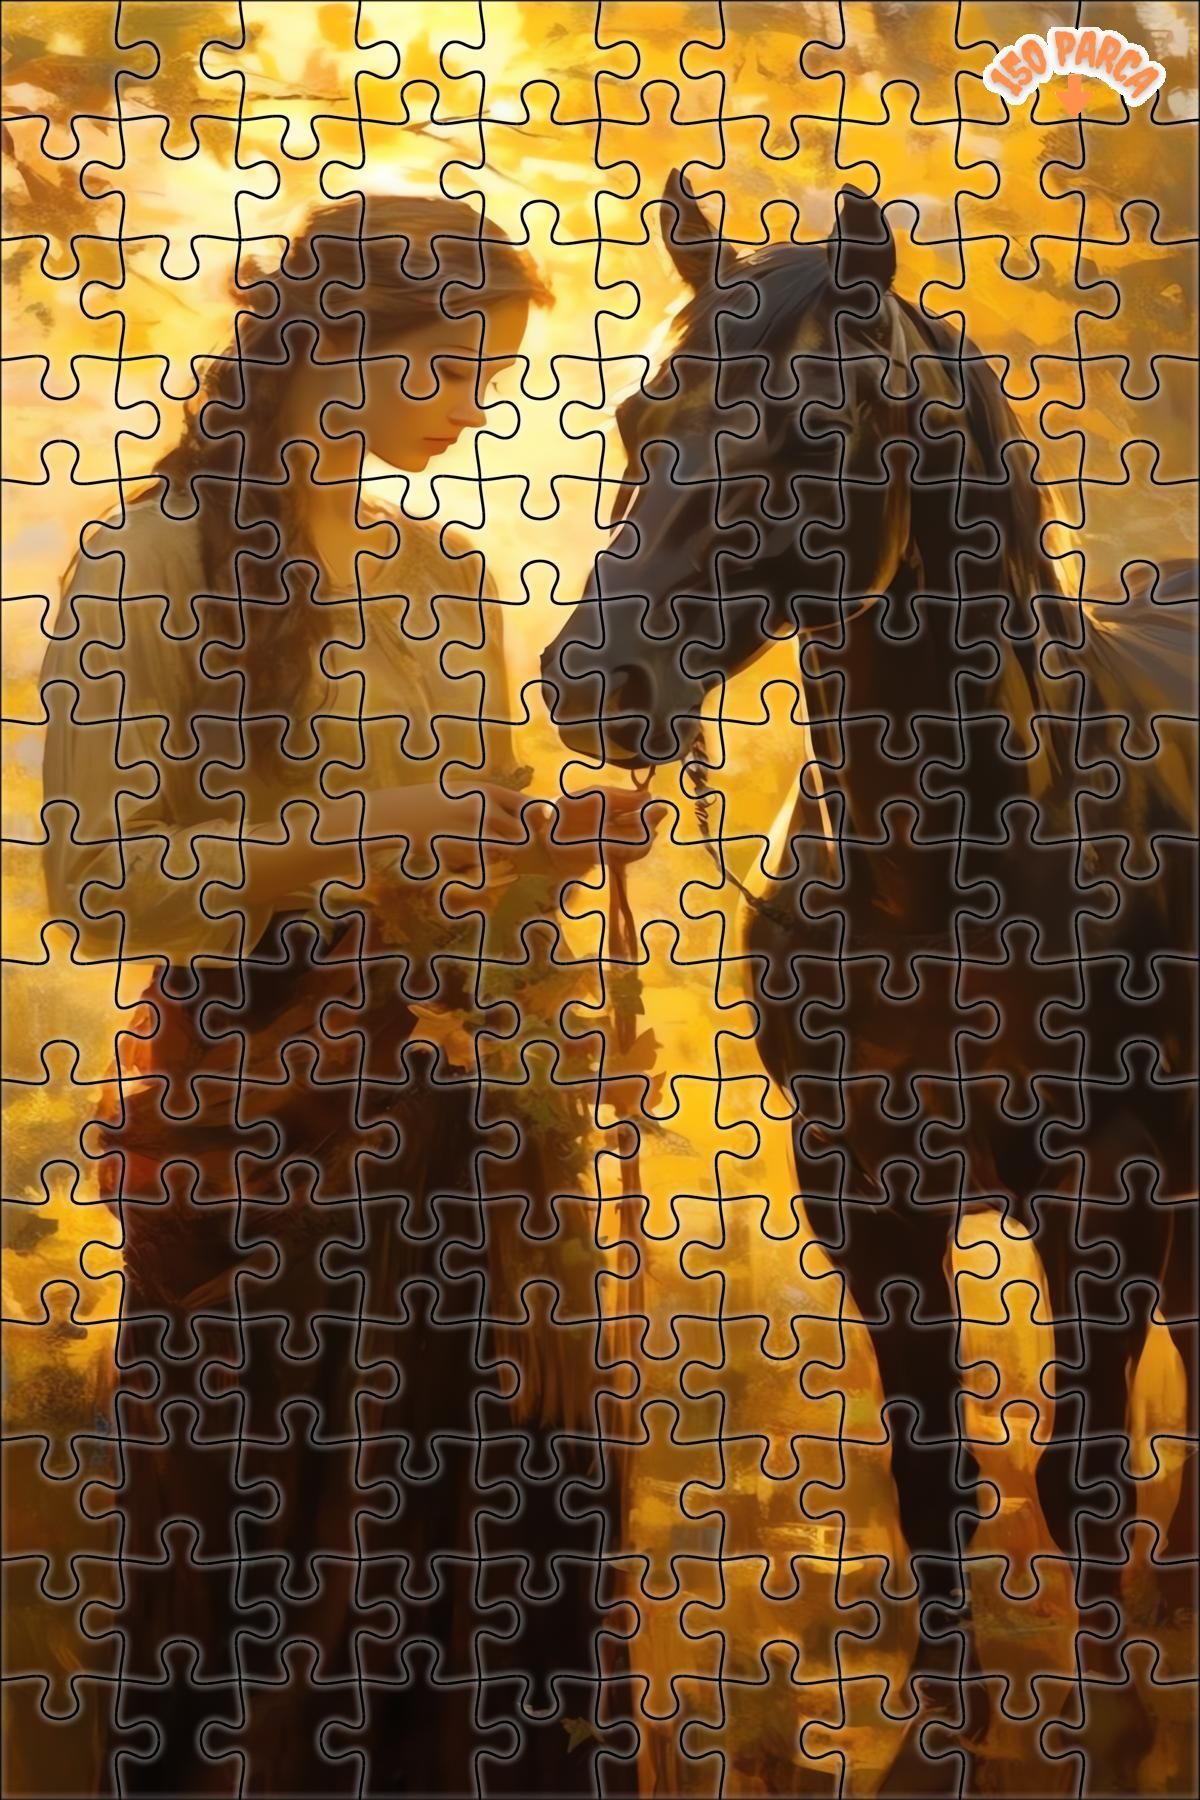 Teona Ahşap Kadın Ve At Yağlı Boya Dekoratif Çift Katlı Çerçeveli Asılabilir Ahşap Puzzle 150 PARÇA 20X30